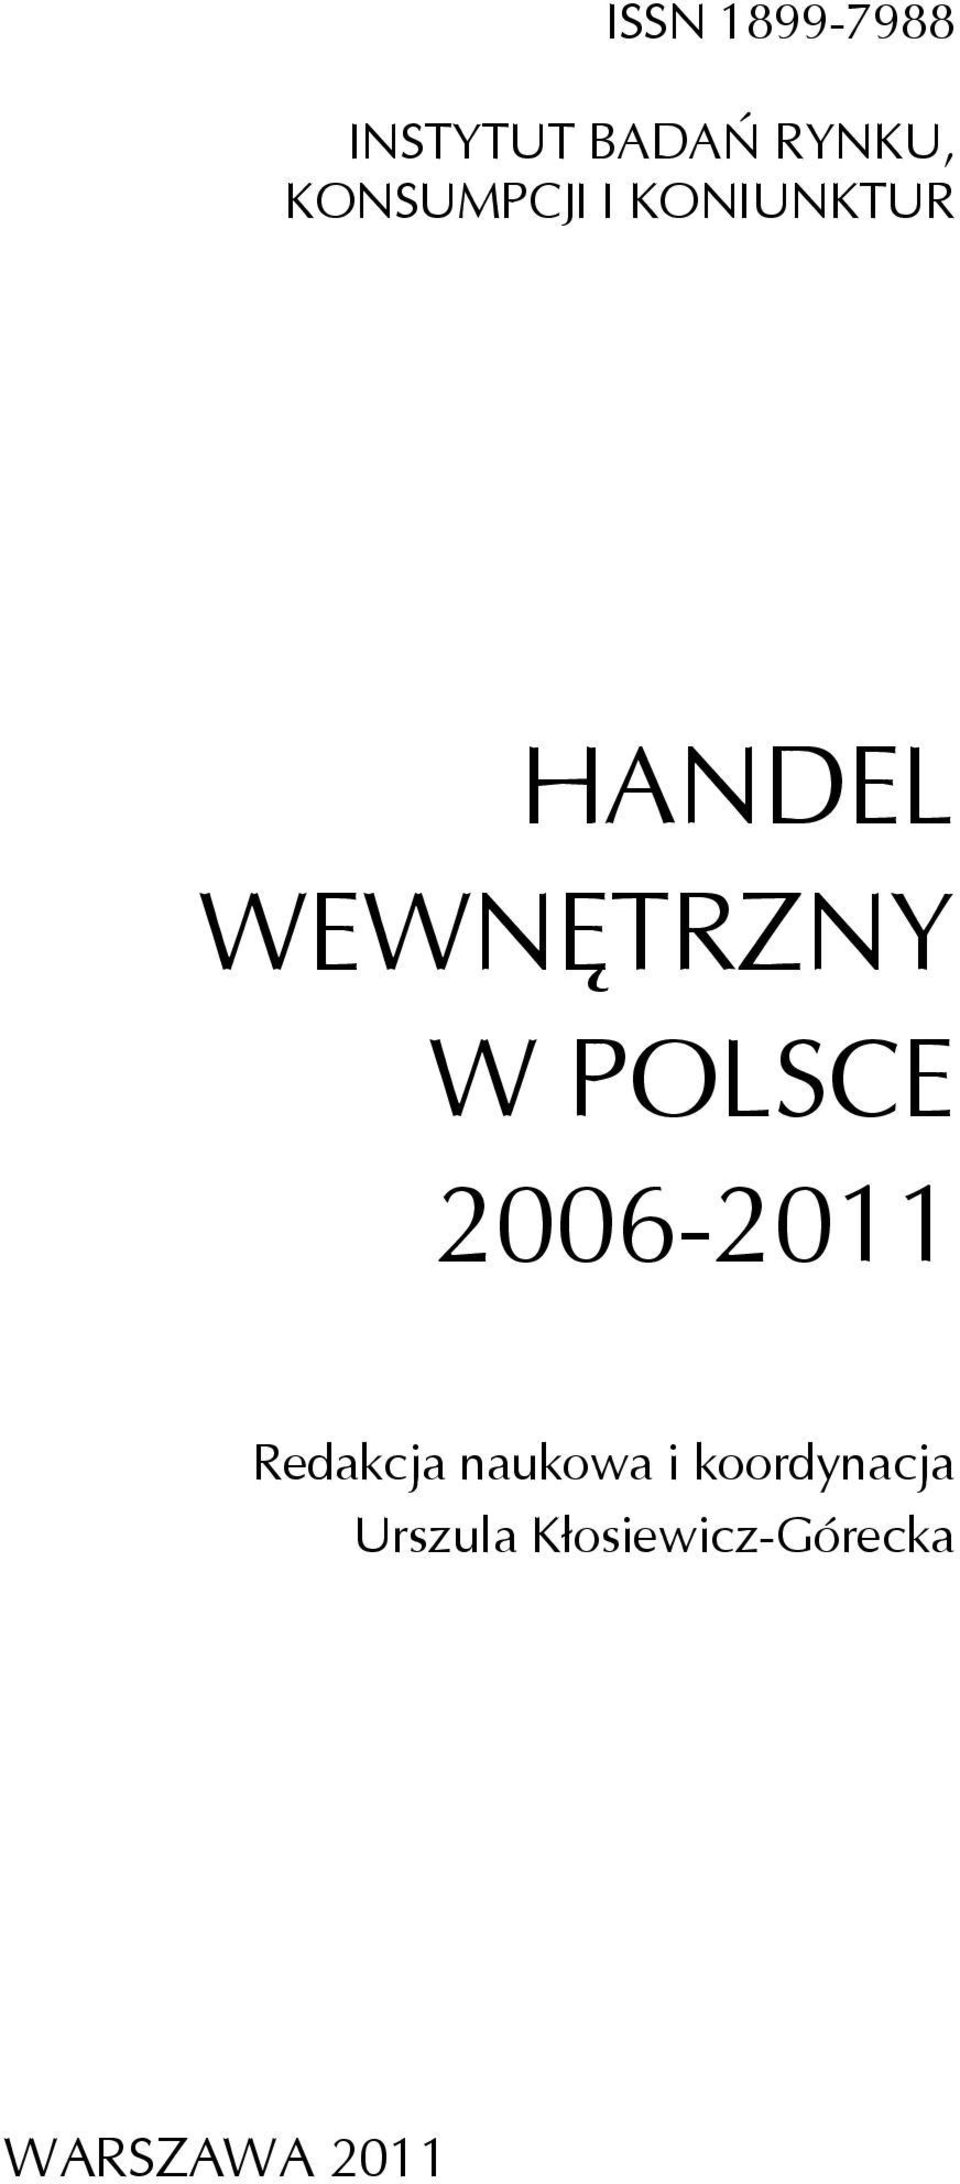 W POLSCE 2006-2011 Redakcja naukowa i